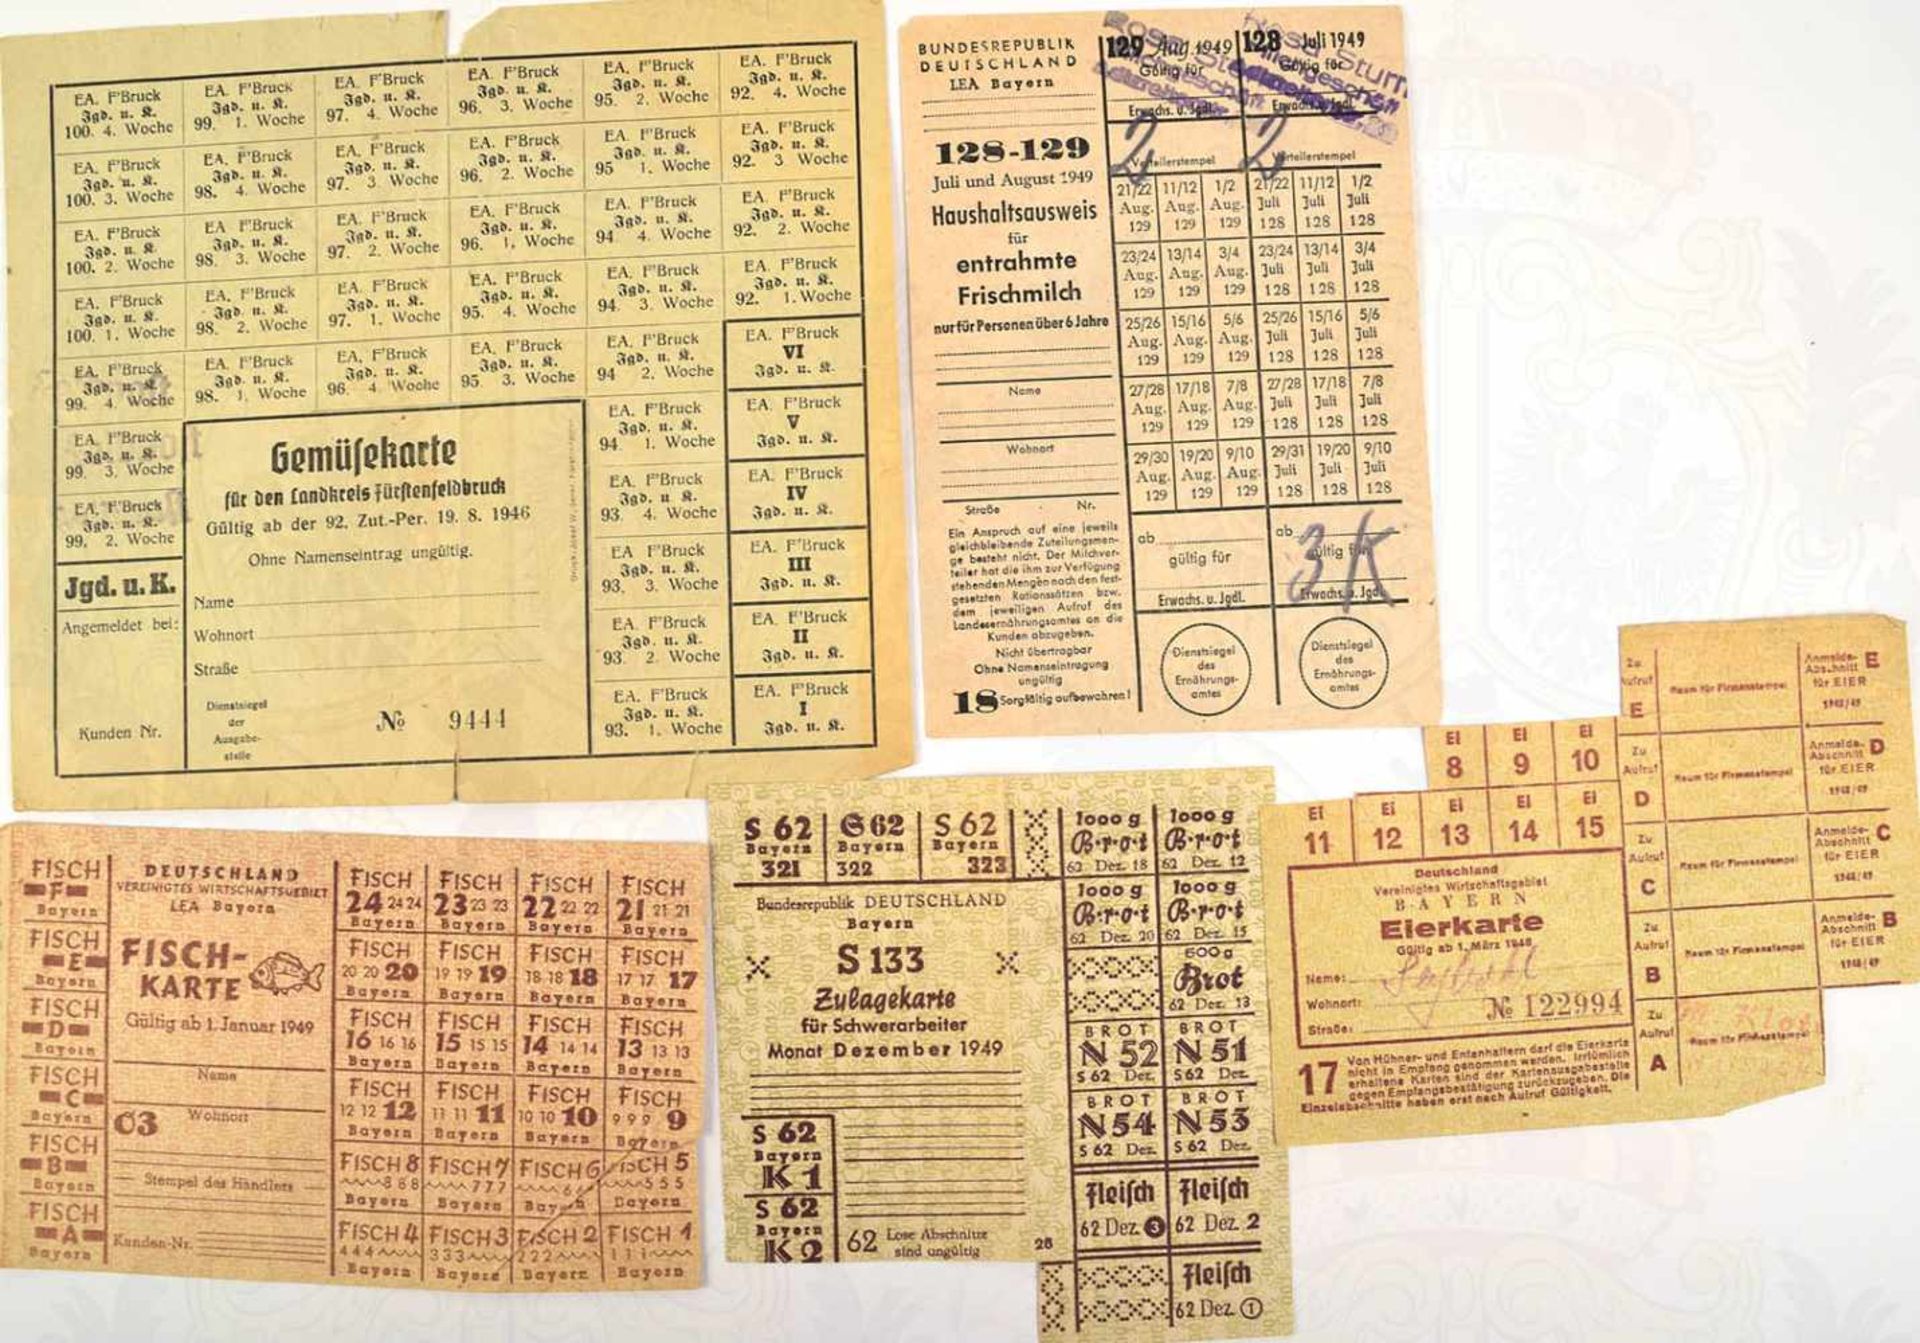 22 LEBENSMITTELMARKEN, 1946-1949, für Brot, Fisch Eier, Milch, Gemüsekarte, Kartoffeln, Seife,